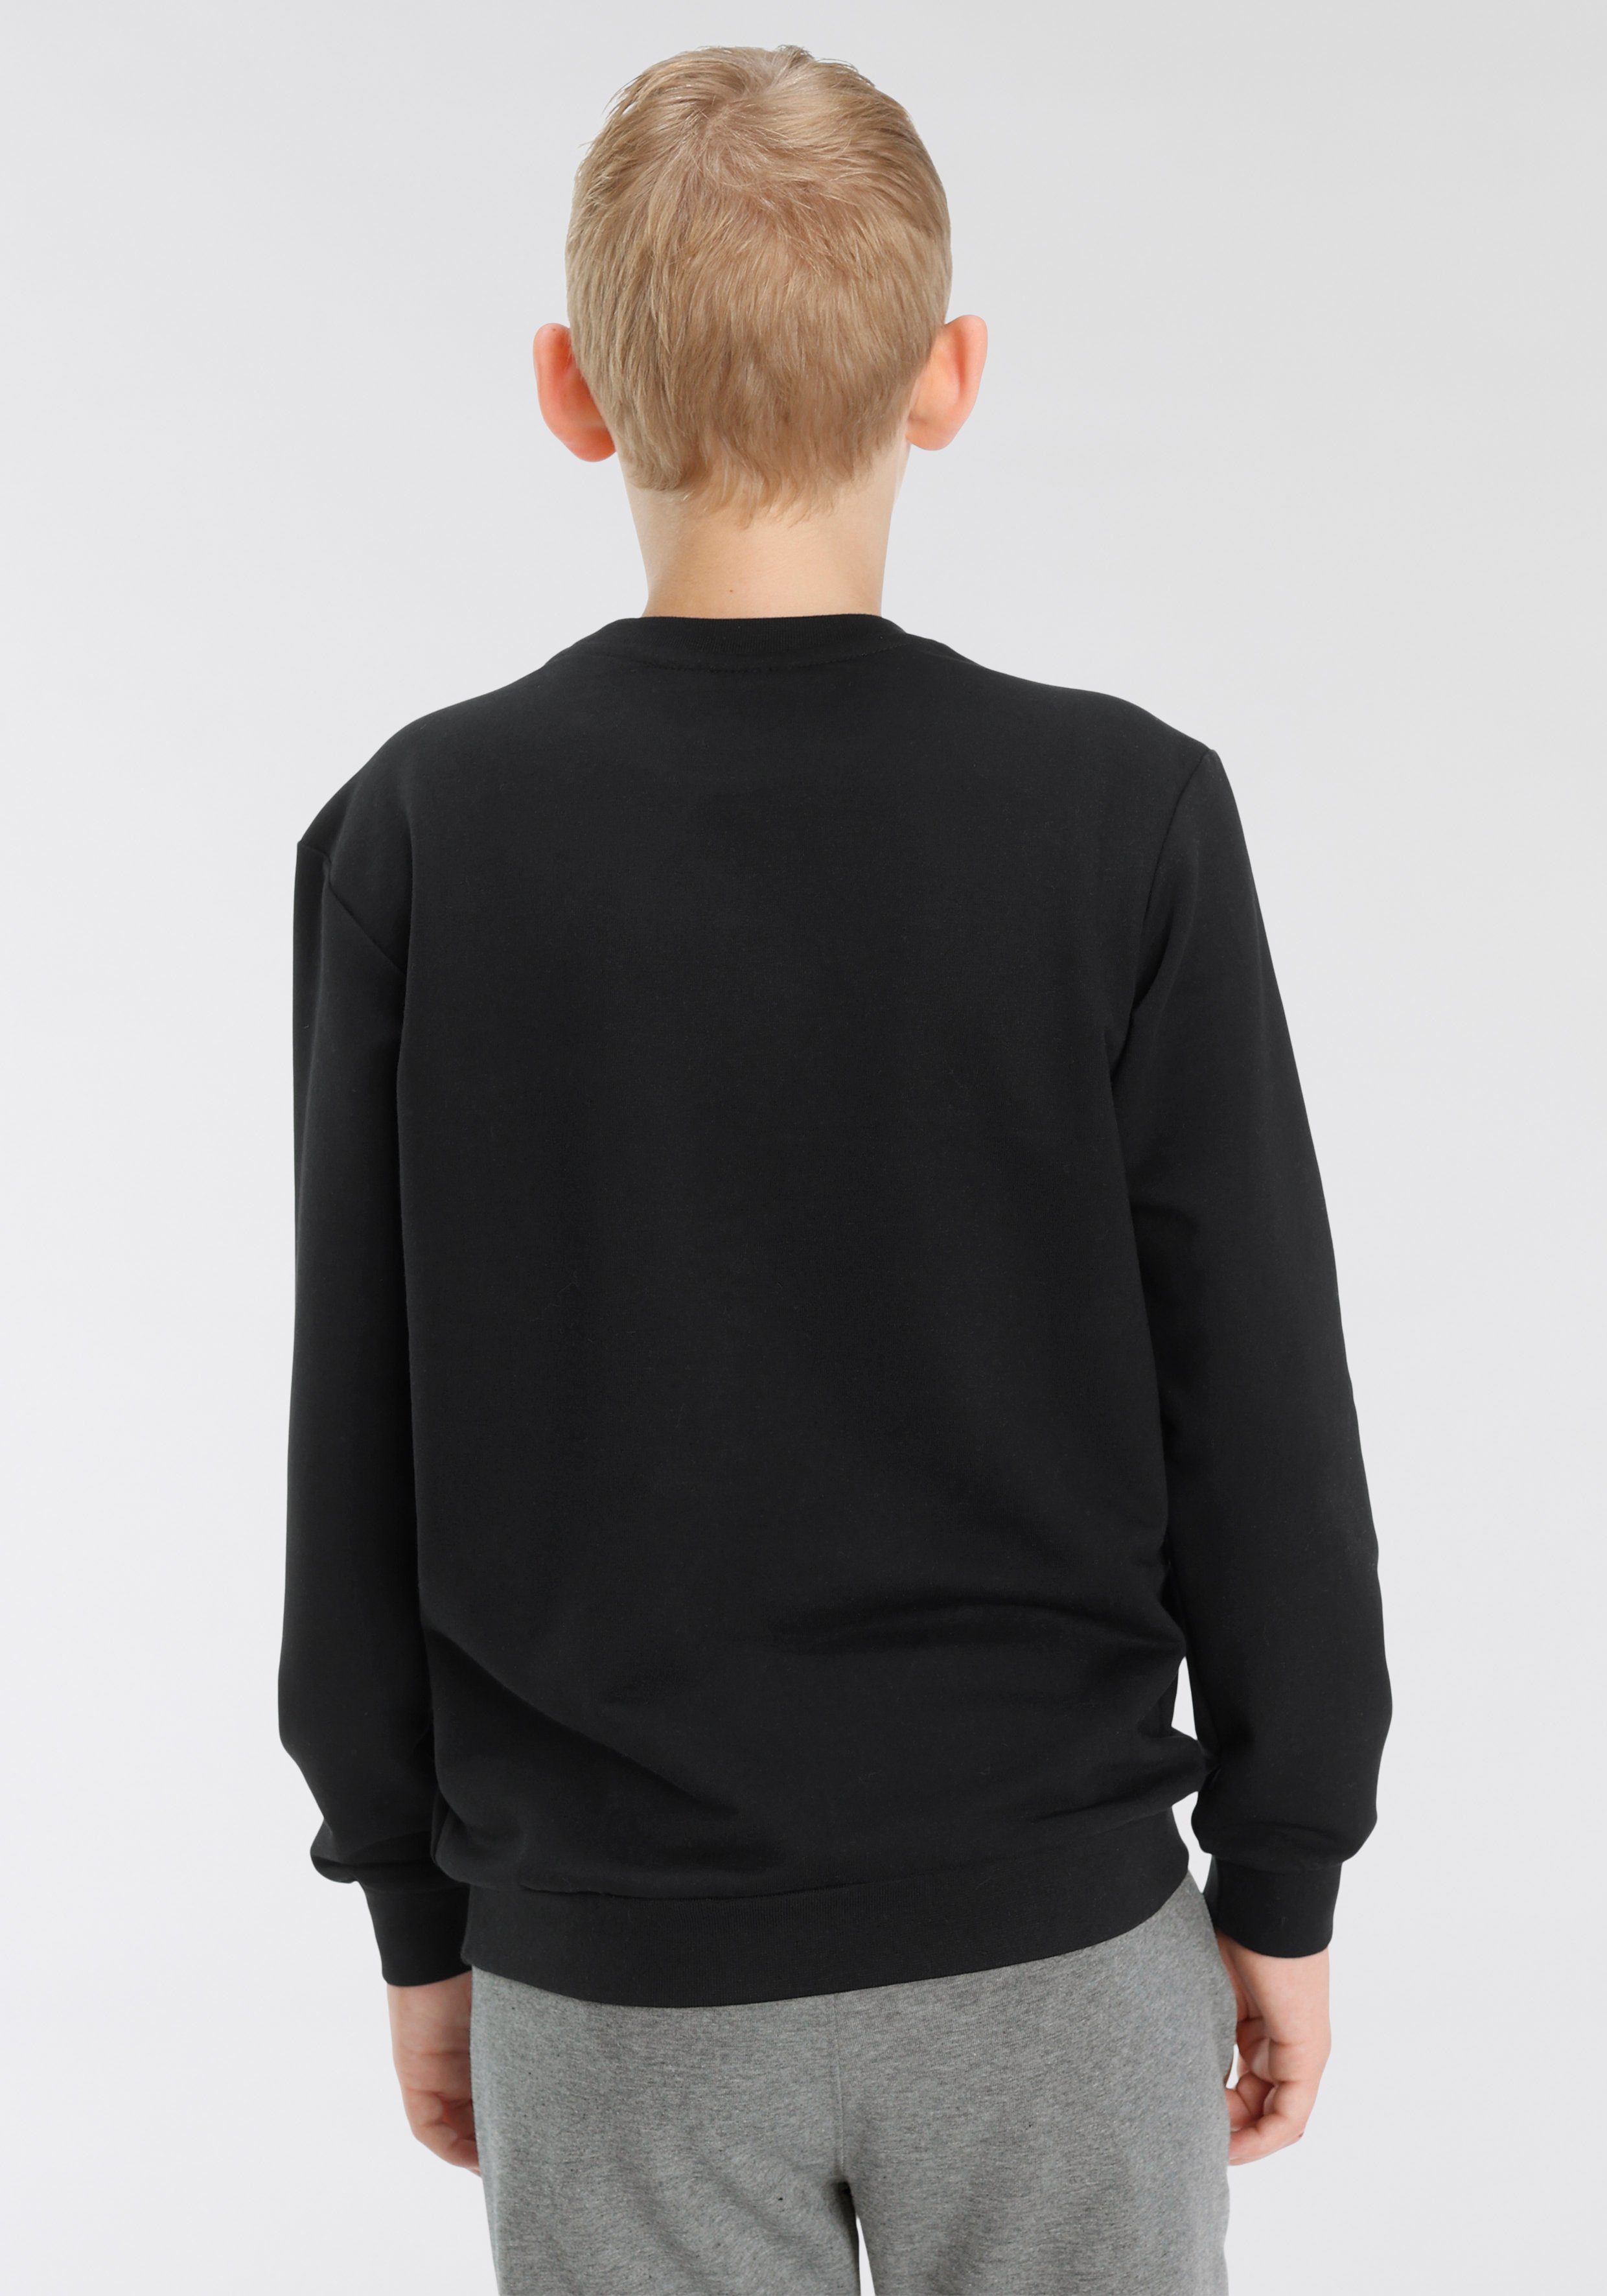 SWEATSHIRT Kinder Sweatshirt DOS für hummel schwarz -